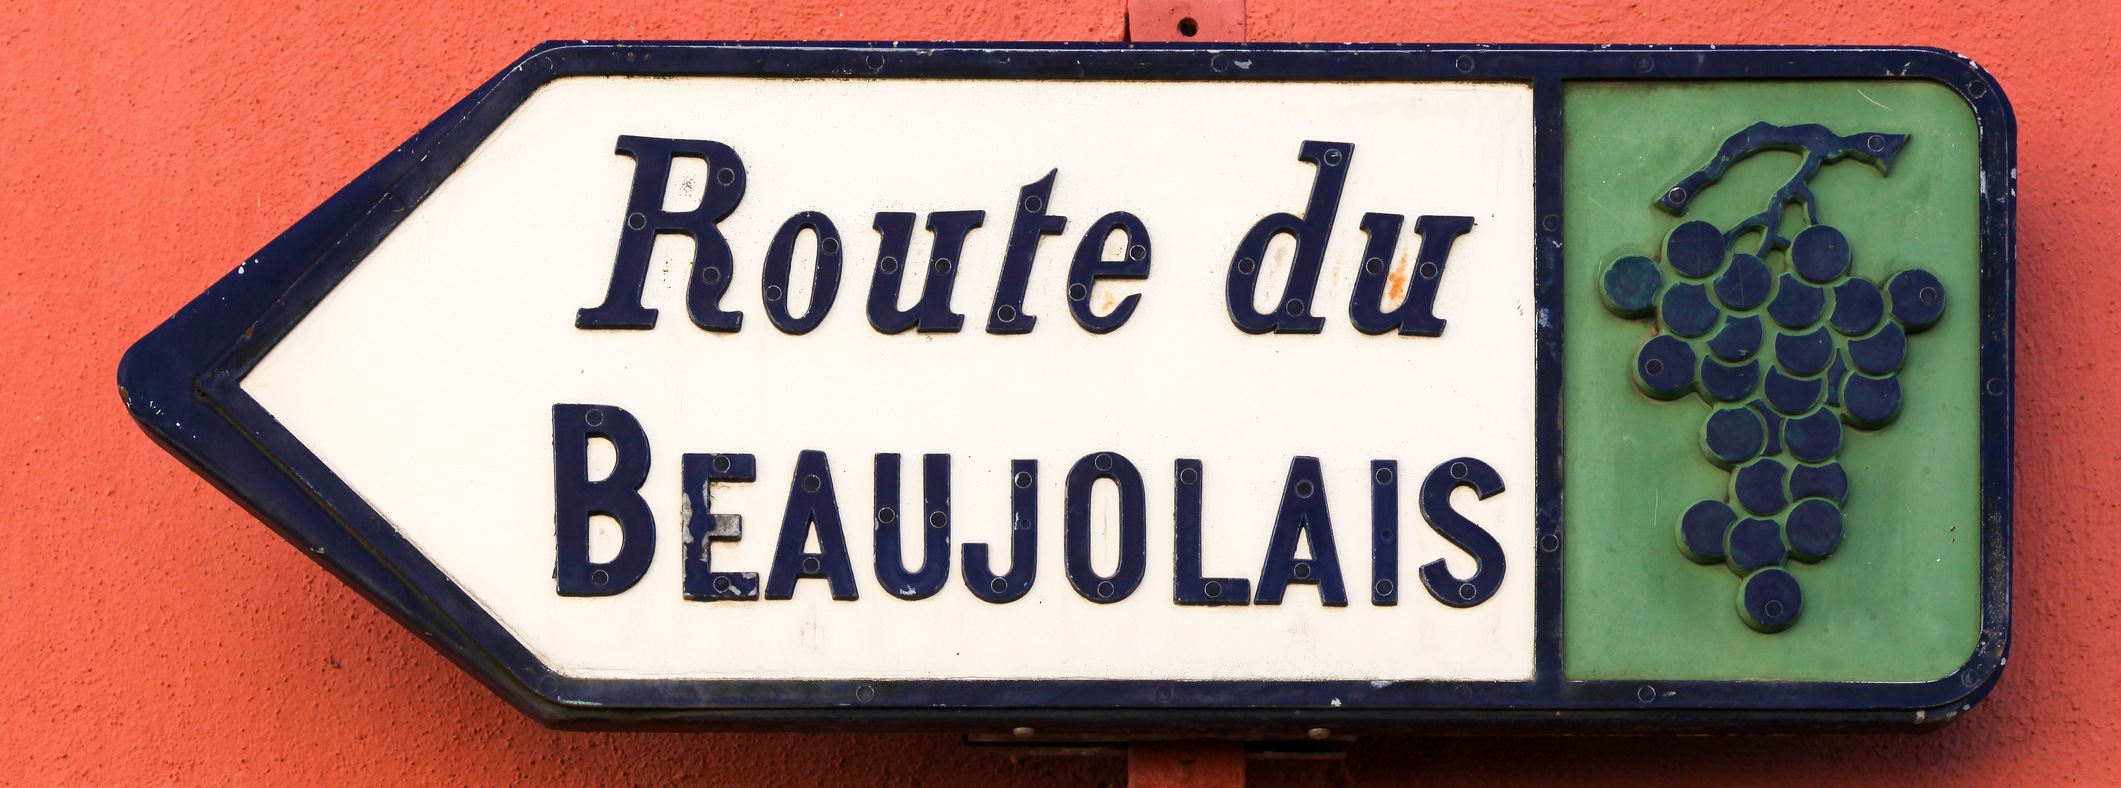 beaujolais-morgon-brouilly-fleruie-moulin-avent-av.jpg